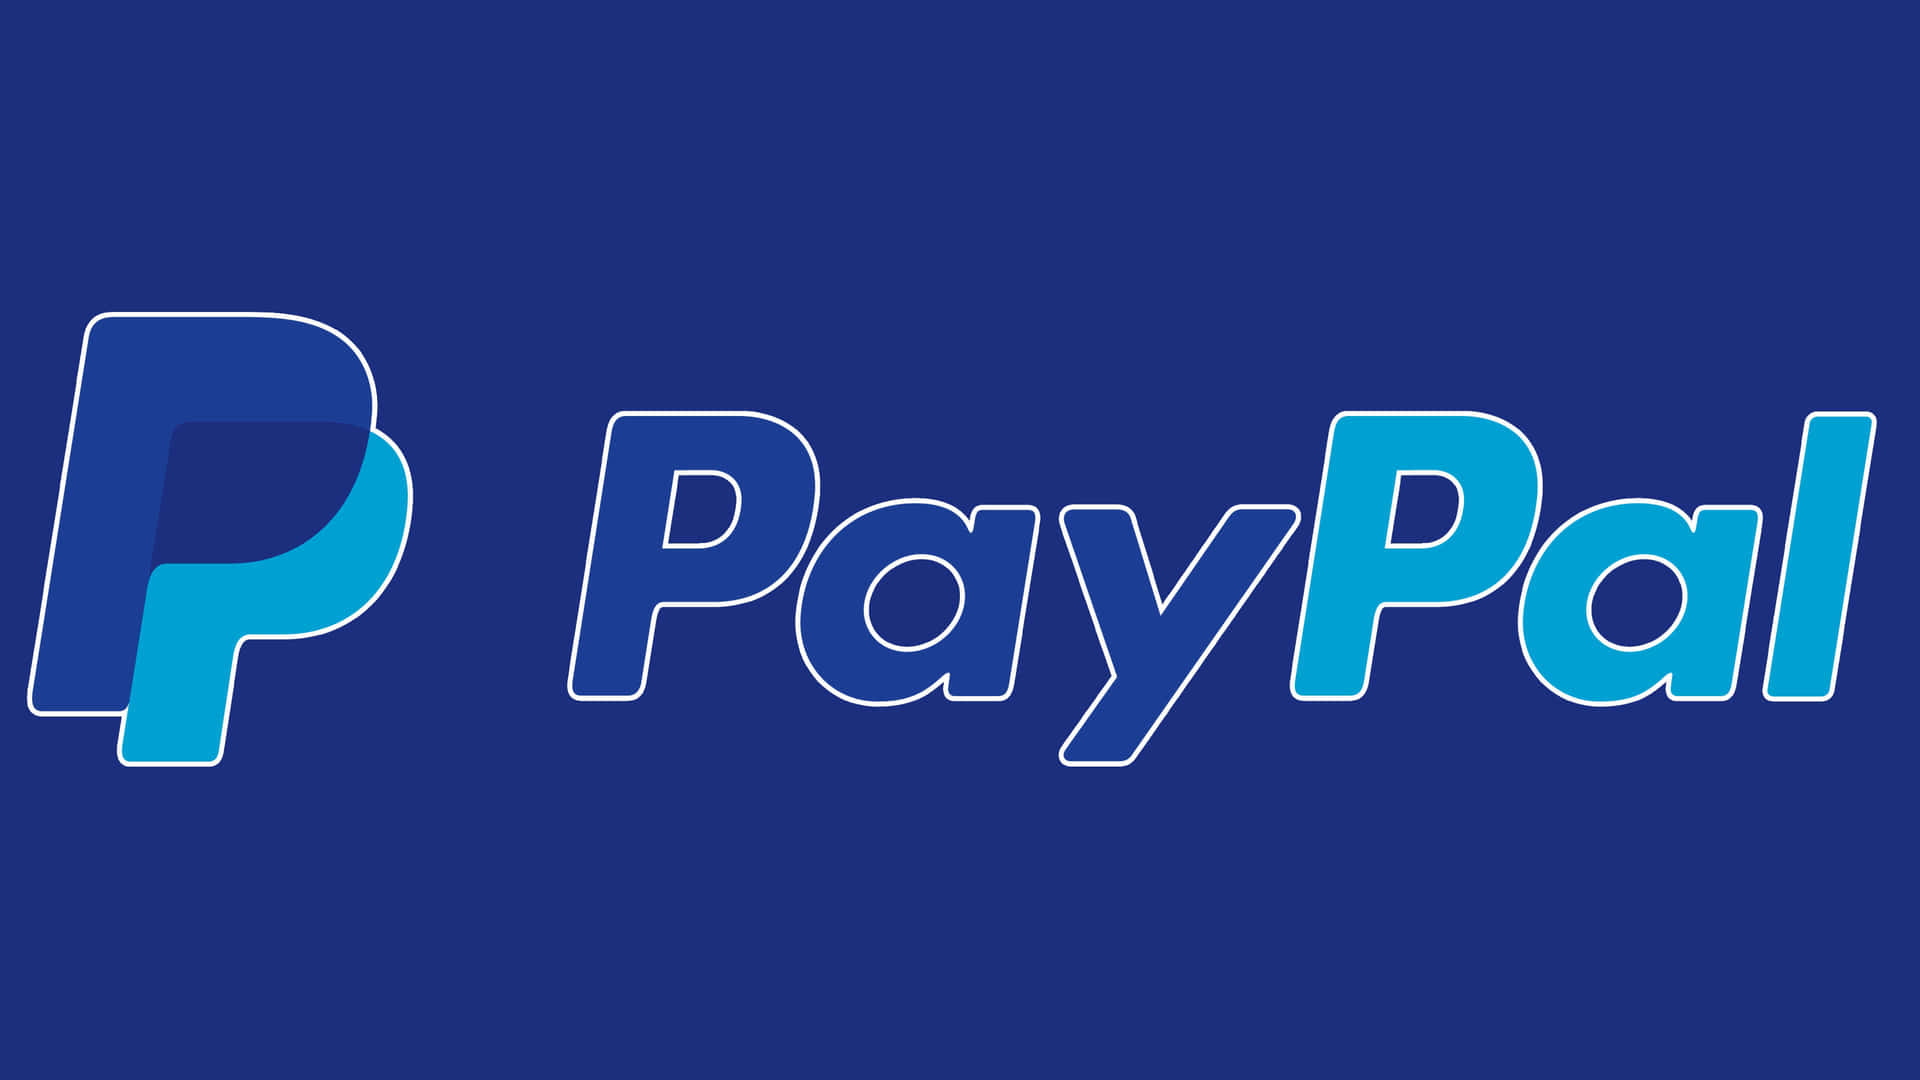 Paypalte Ayuda A Manejar Tus Transacciones Monetarias De Forma Segura.